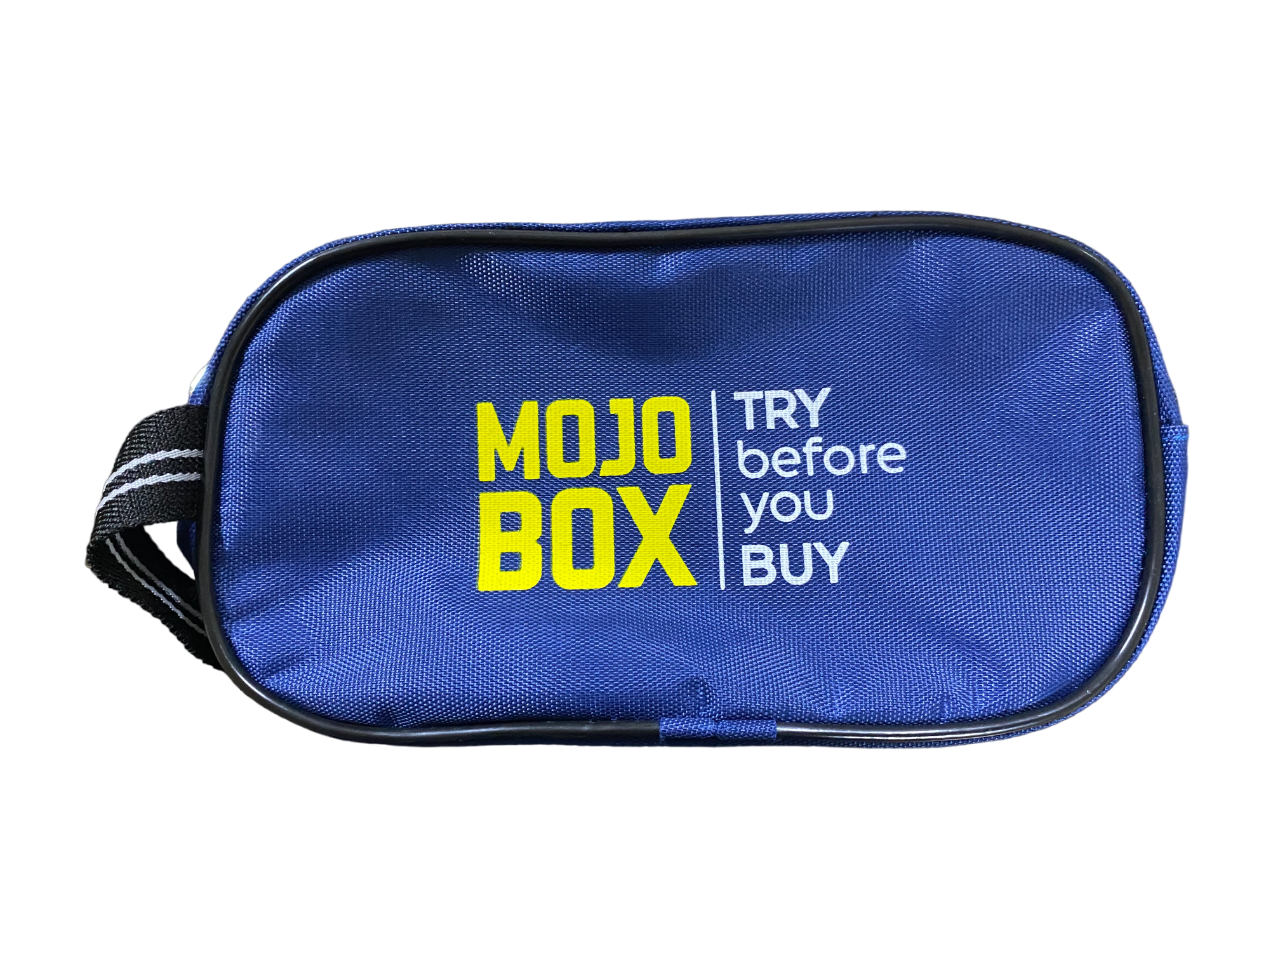 Mojo Box Travel Pouch